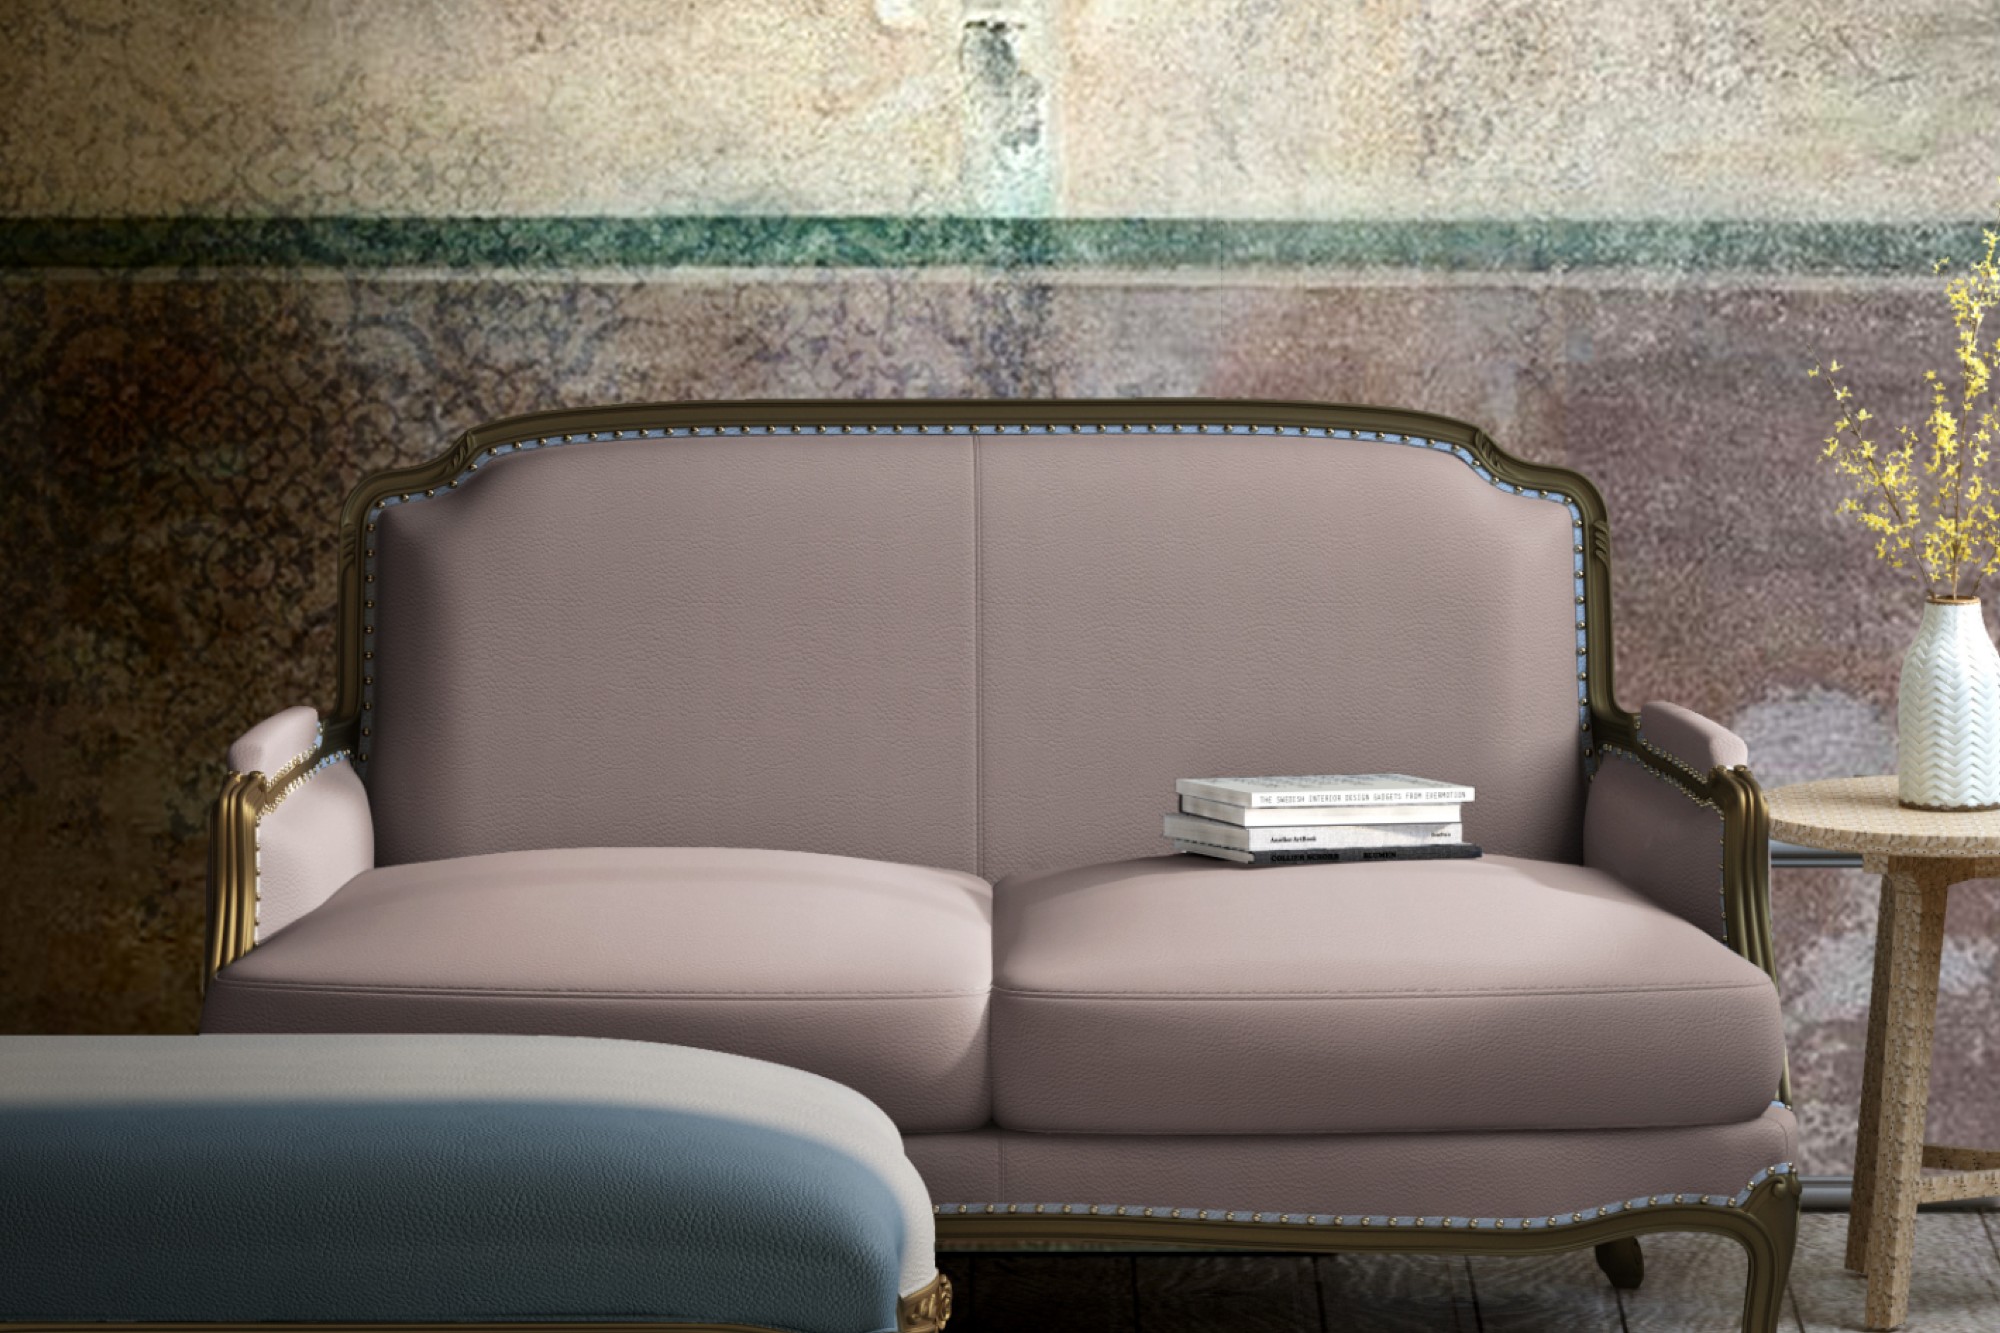 RR Decor introduces Avanti collection for interior decor